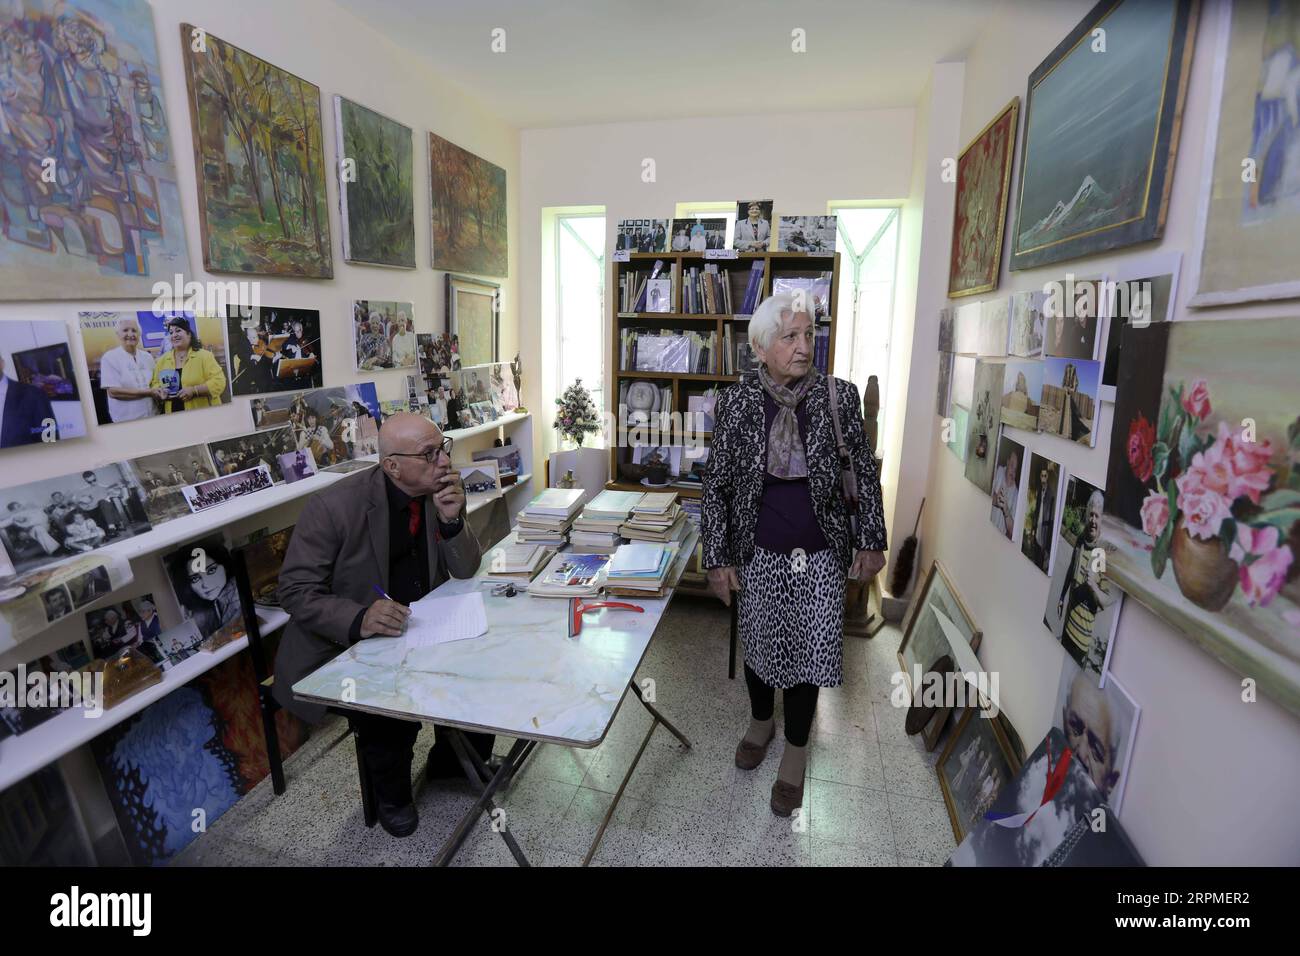 200210 -- BAGHDAD, 10 febbraio 2020 Xinhua -- la scrittrice irachena Safira Jamil Hafiz R è vista nella biblioteca nella sua villa a Baghdad, Iraq, il 9 febbraio 2020. In una villa in un quartiere di lusso nel centro di Baghdad, una vecchia scrittrice irachena era ansiosa di offrire un'iniziativa volta a promuovere il movimento culturale in Iraq dopo decenni di guerre nel paese distrutto dalla guerra. Safira Jamil Hafiz, 89 anni, ha approfittato della posizione tranquilla della sua villa nel quartiere di Karrada e ha dedicato il piano superiore del suo edificio a due piani per essere una biblioteca pubblica per i lettori di libri, compresi gli studenti, per godersi la lettura wi-fi Foto Stock